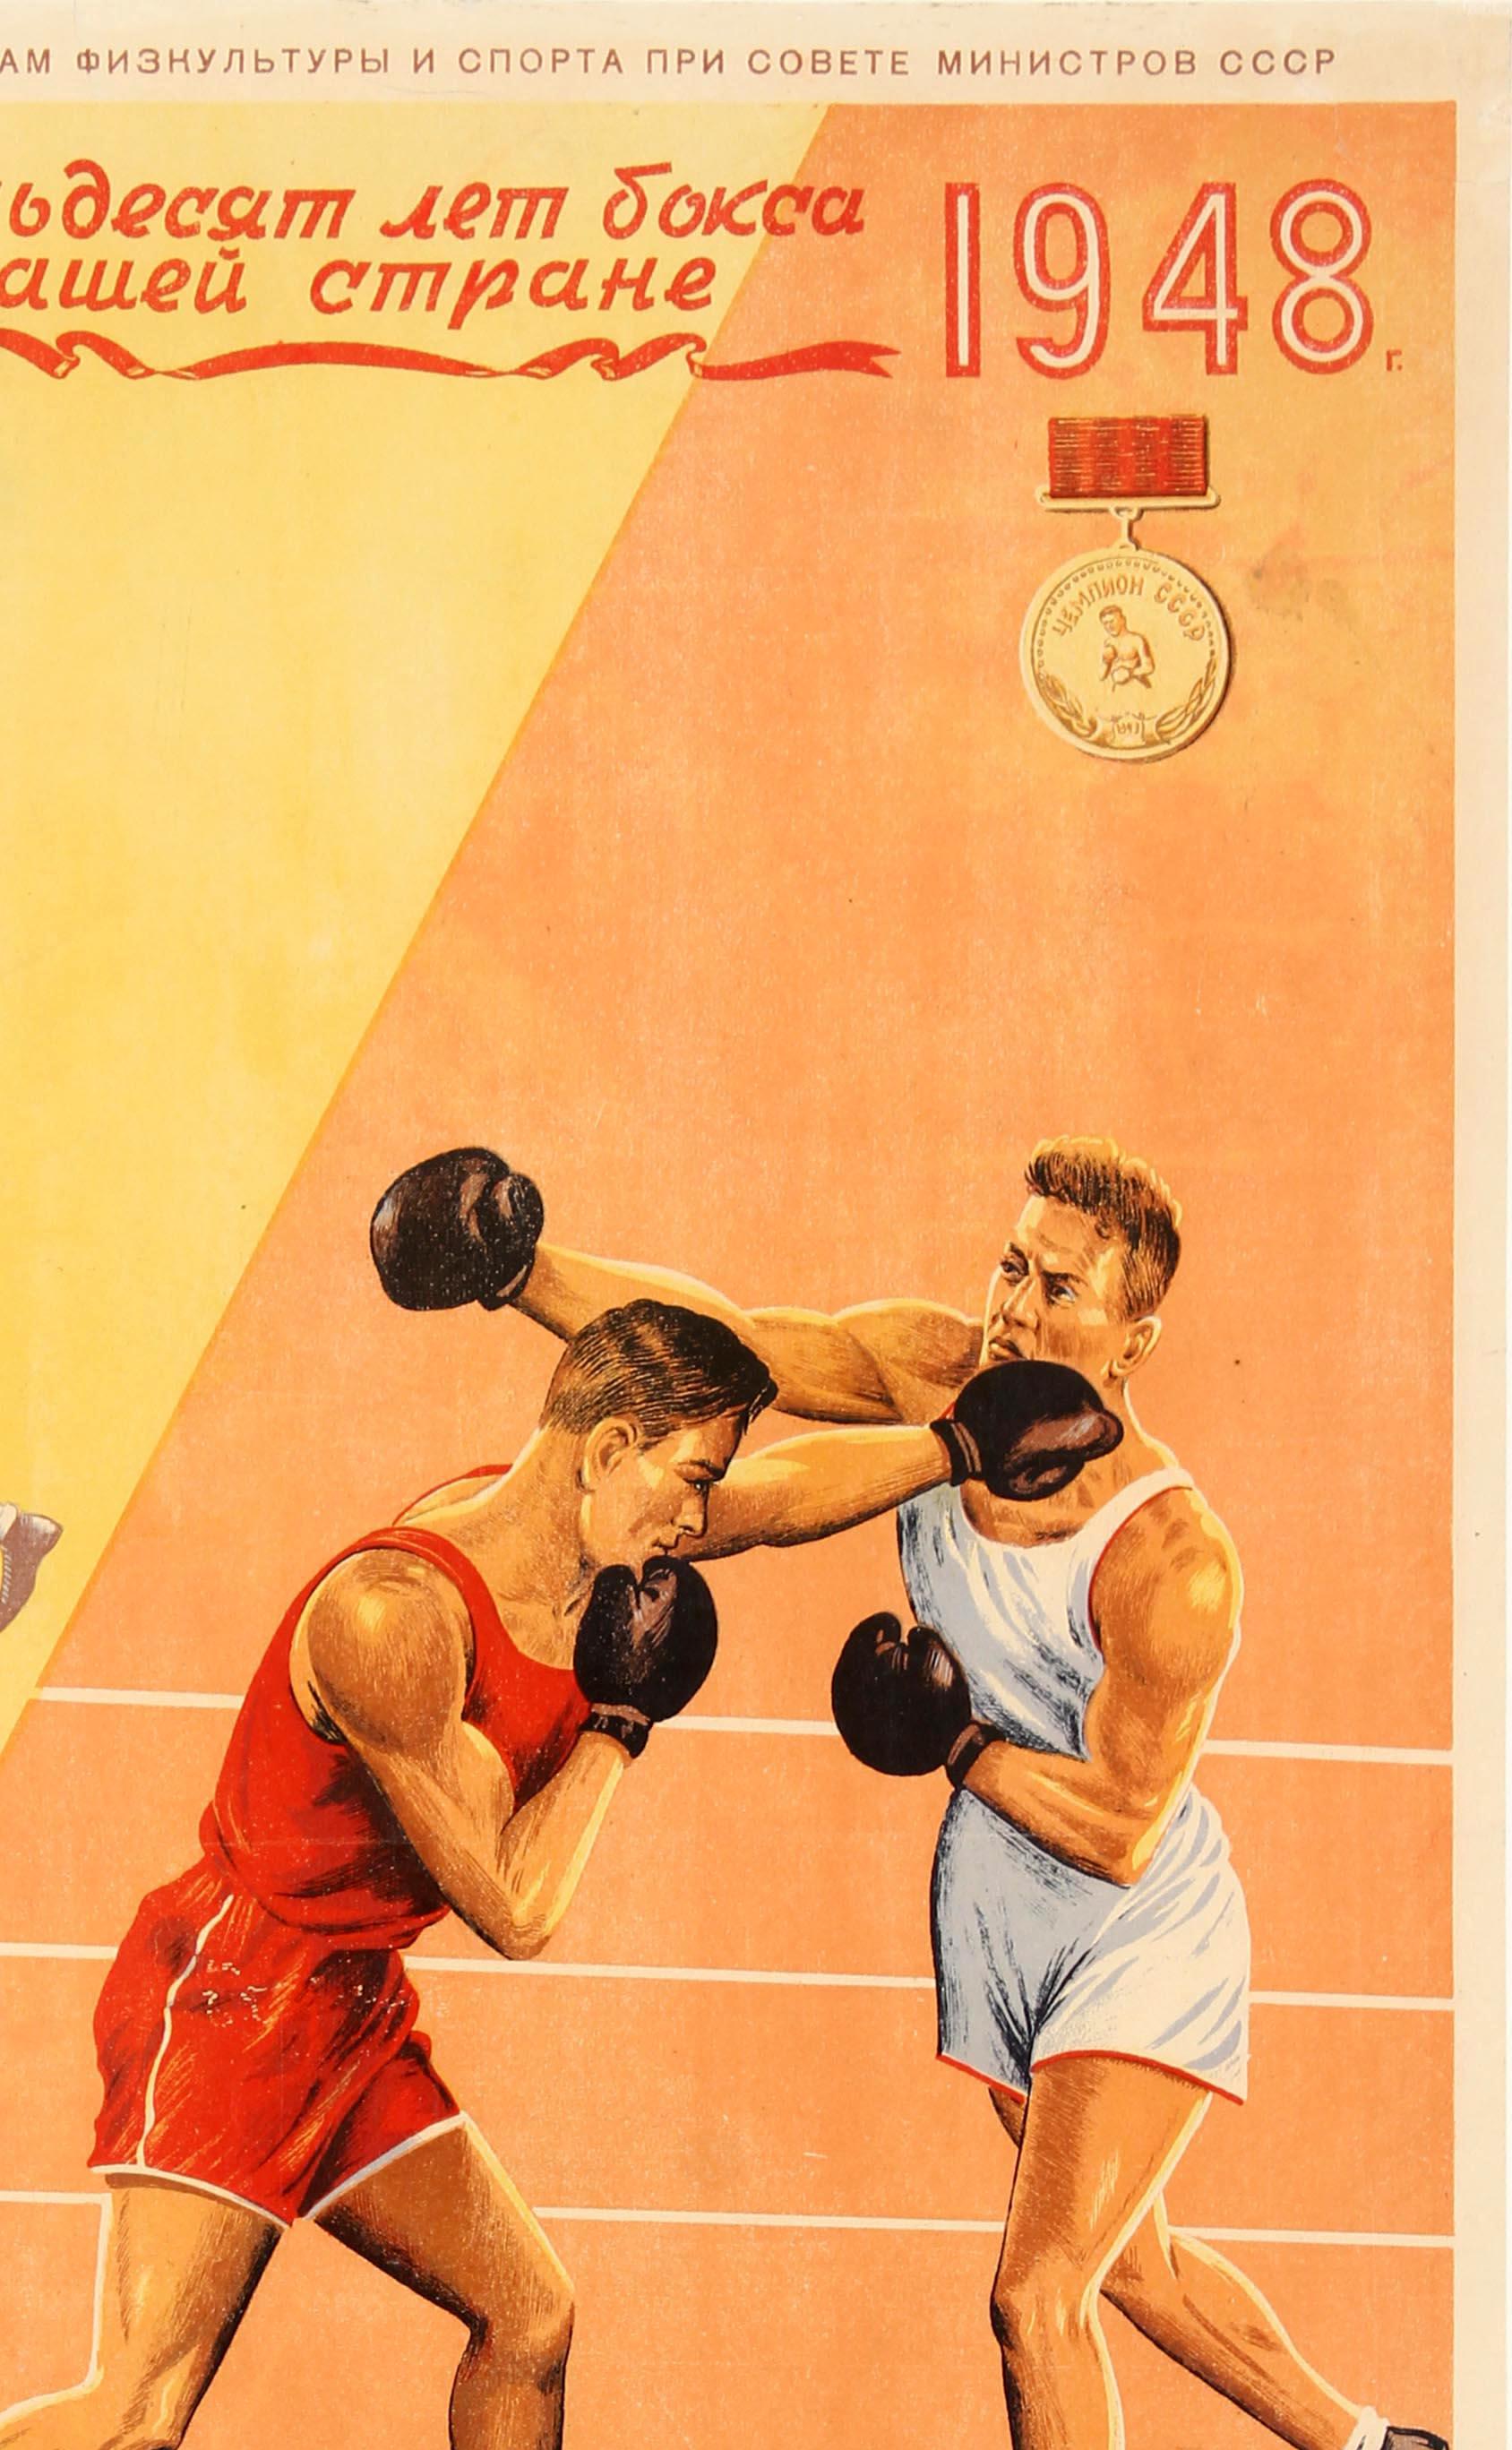 Affiche sportive soviétique originale d'époque promouvant 50 ans de Boxe en Russie 1898 1948 Le sport du courage et de la force publiée par le ministère de la culture physique et du sport de l'URSS. Grande illustration représentant deux scènes de